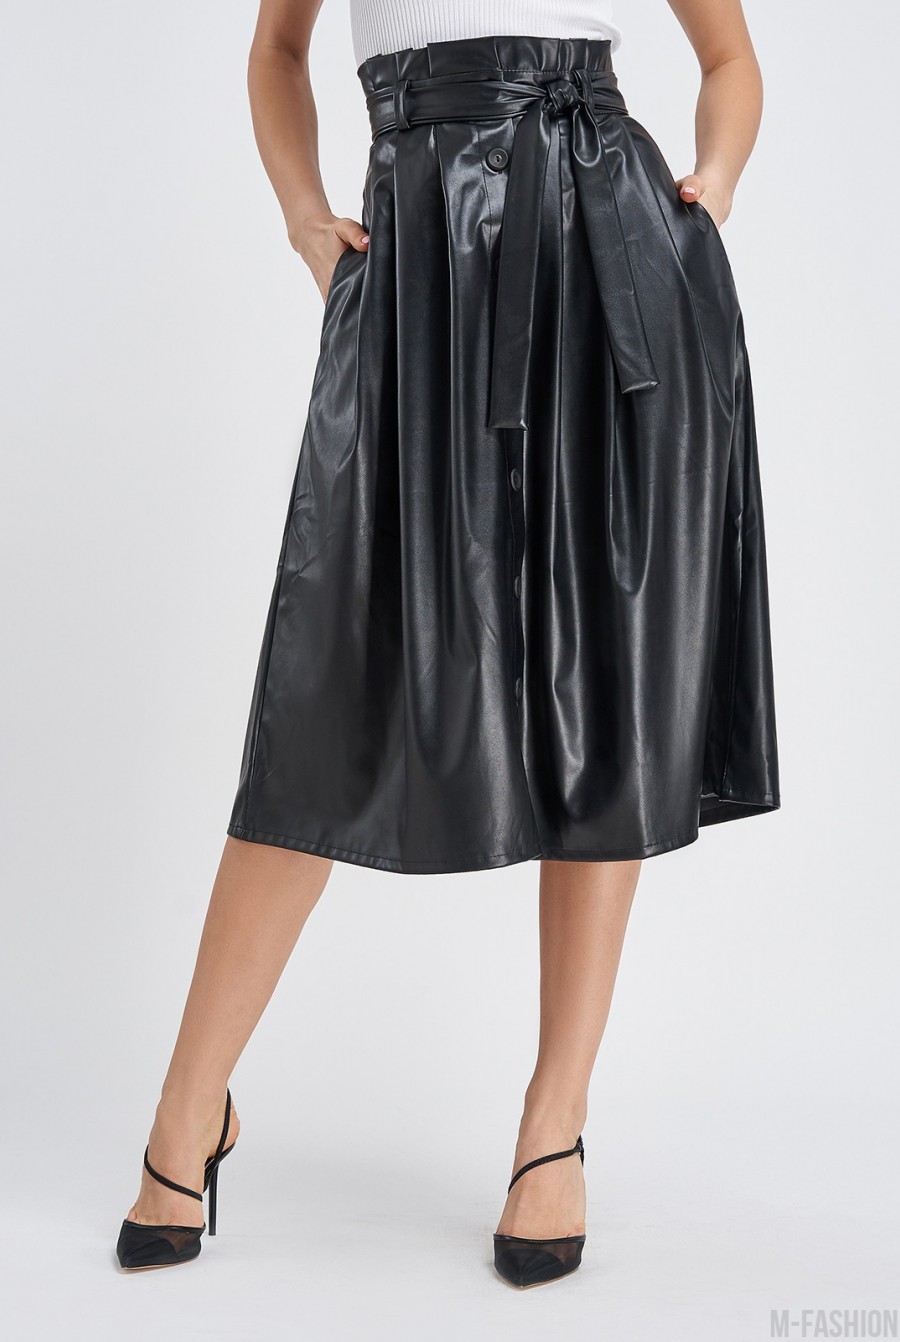 Черная юбка на пуговицах из эко-кожи - Фото 1